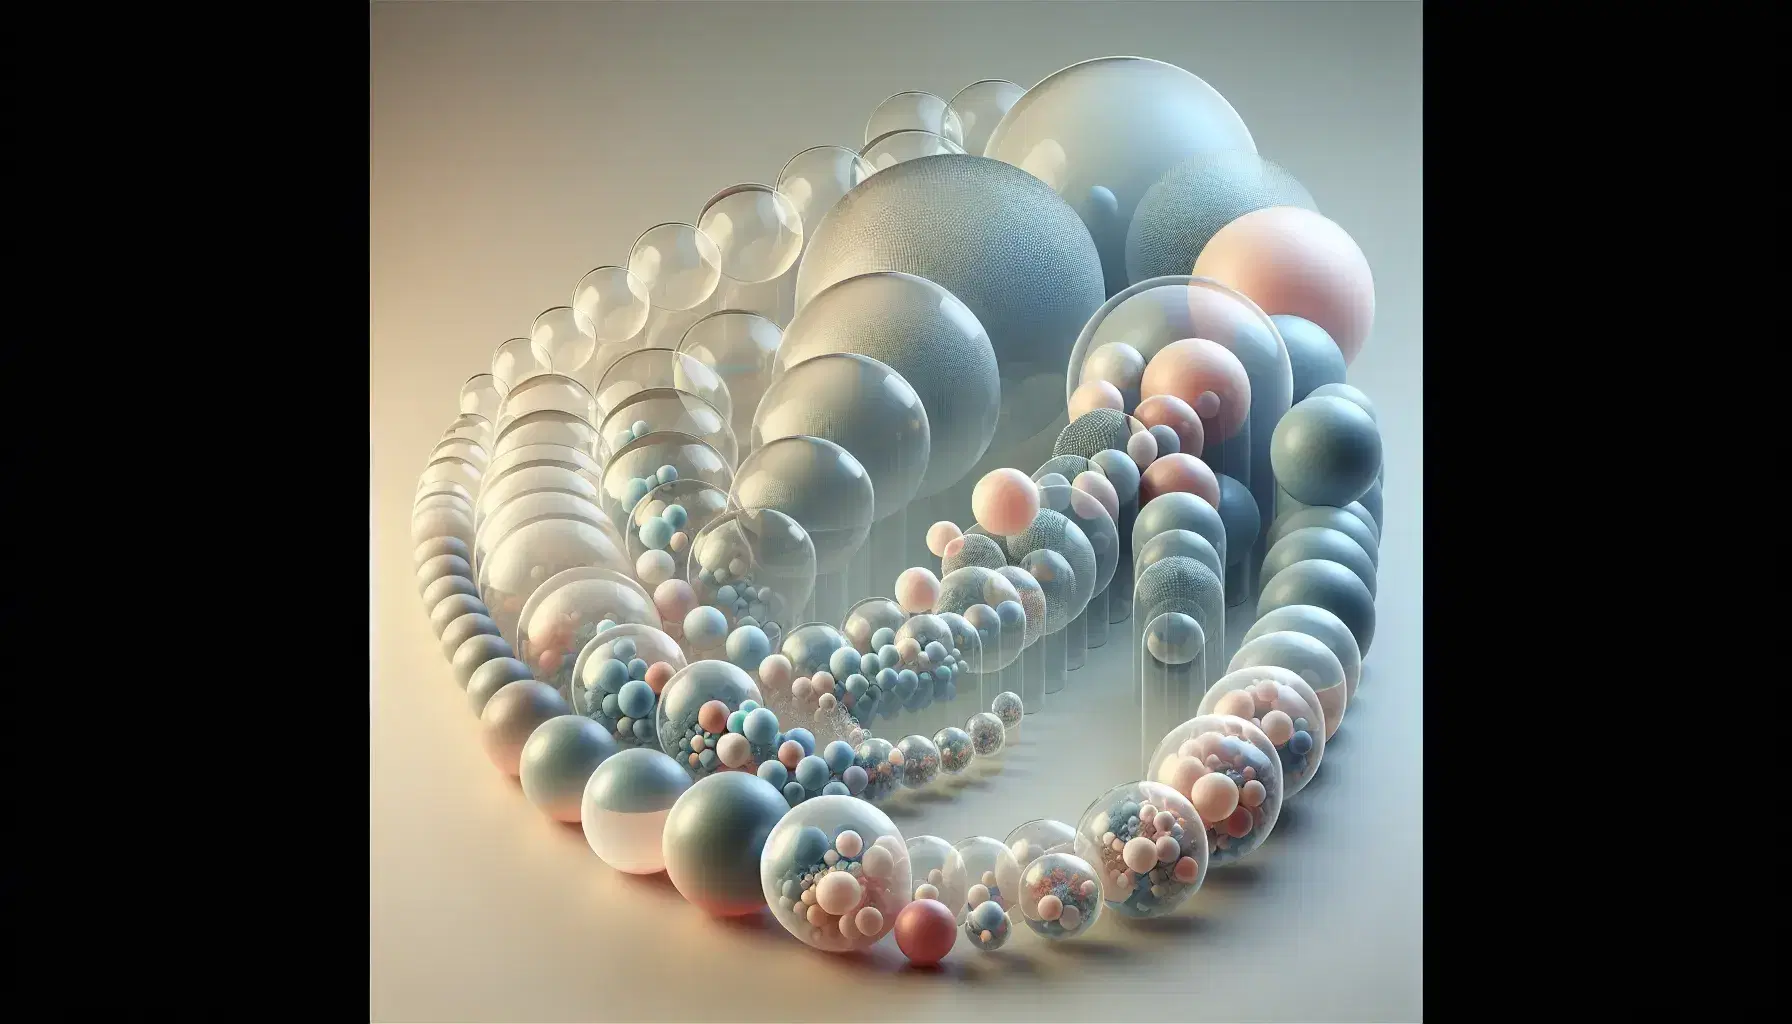 Esferas translúcidas de distintos tamaños con estructuras internas de colores suaves sobre fondo neutro, reflejando luz y sombras suaves.